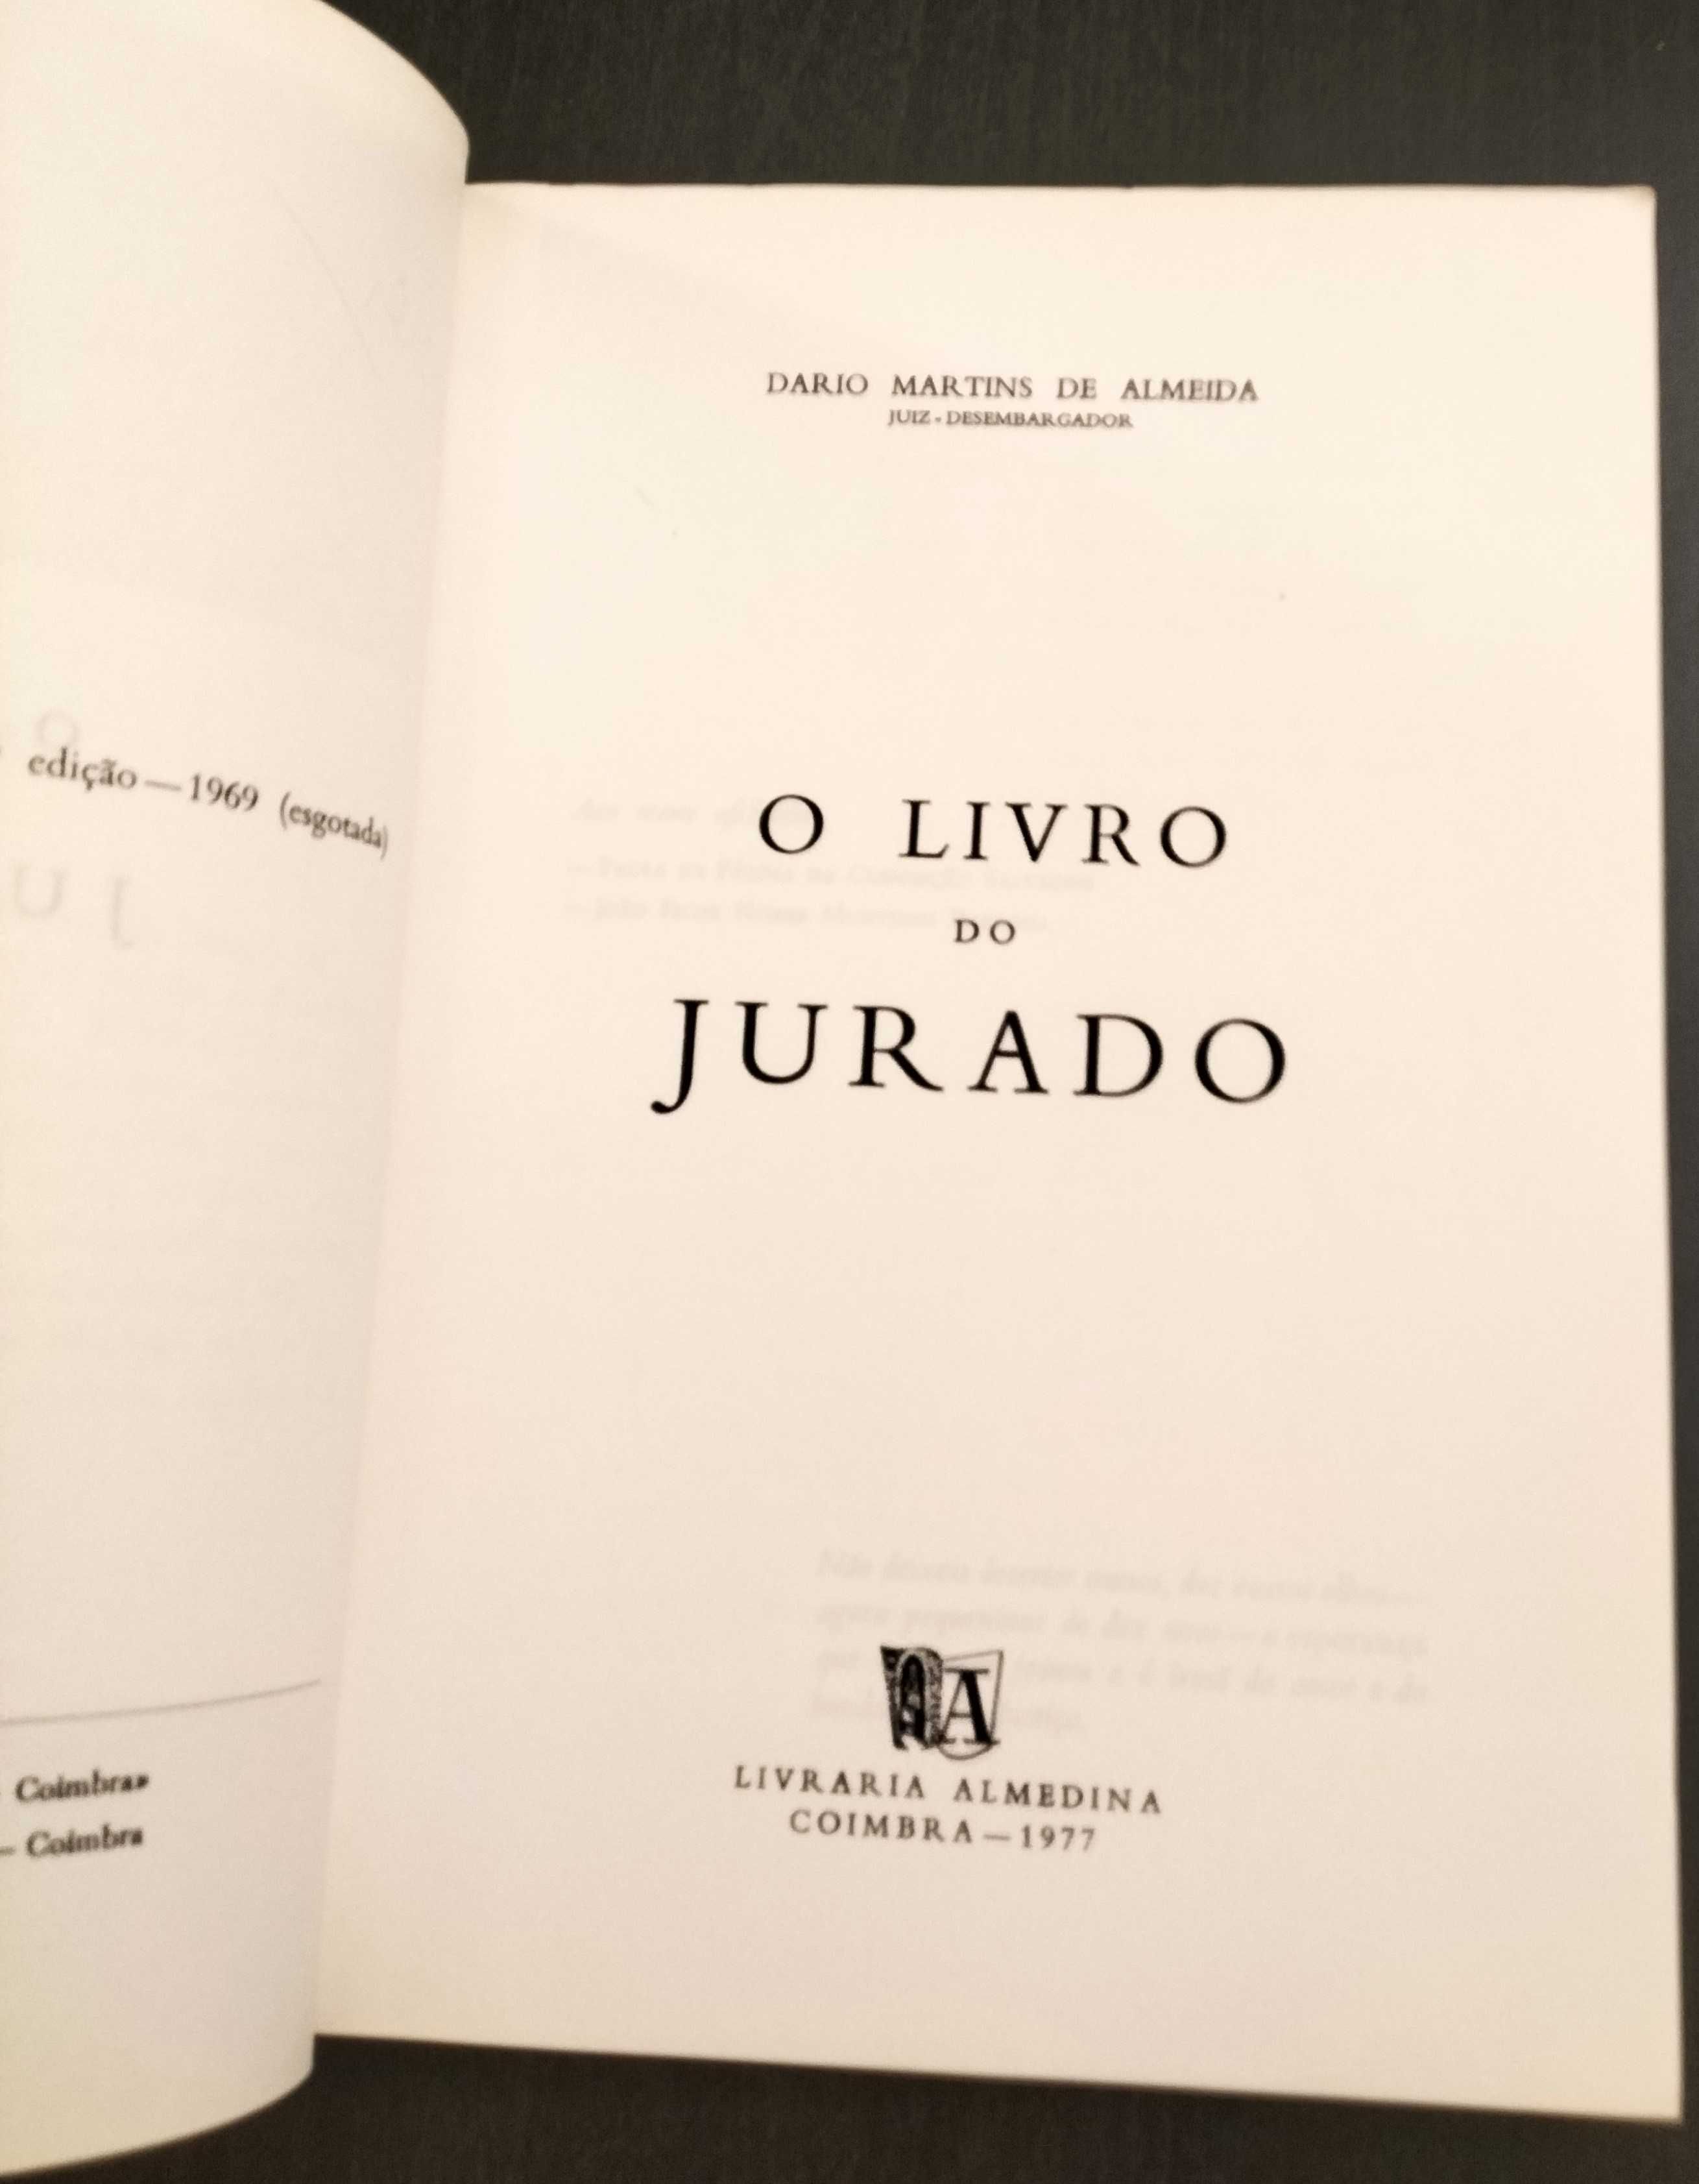 Dario Martins de Almeida - O livro do Jurado